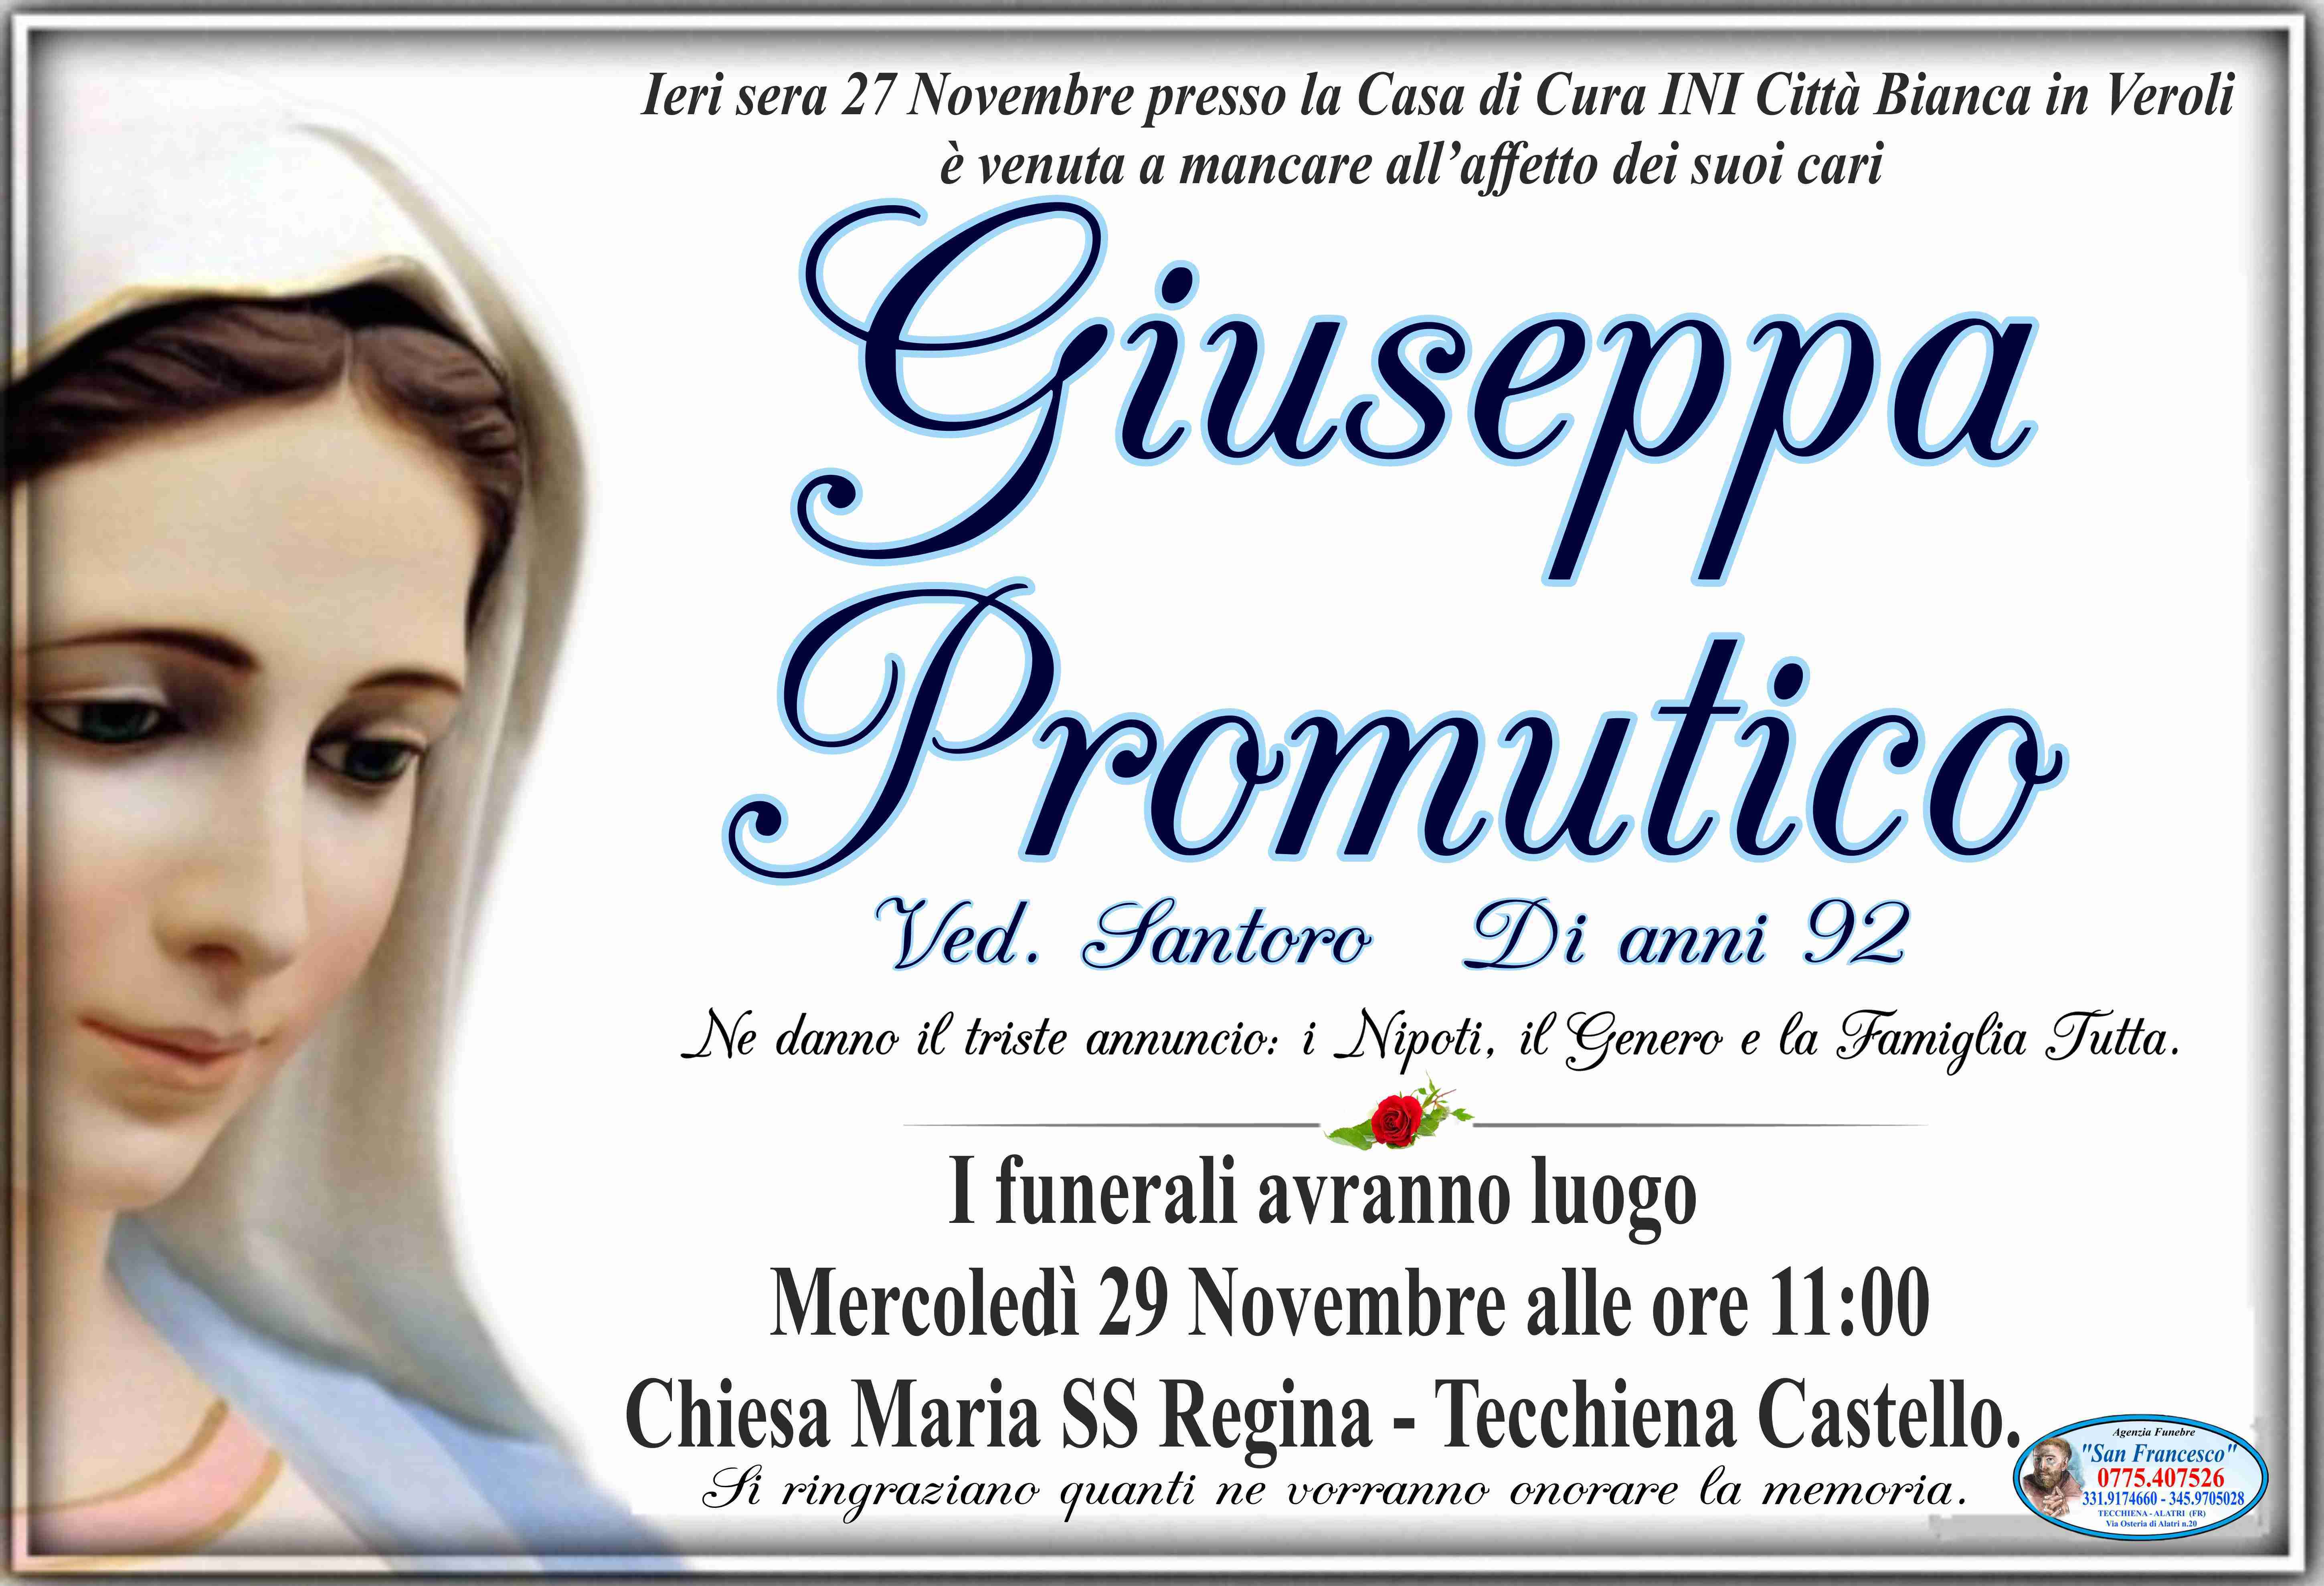 Giuseppa Promutico